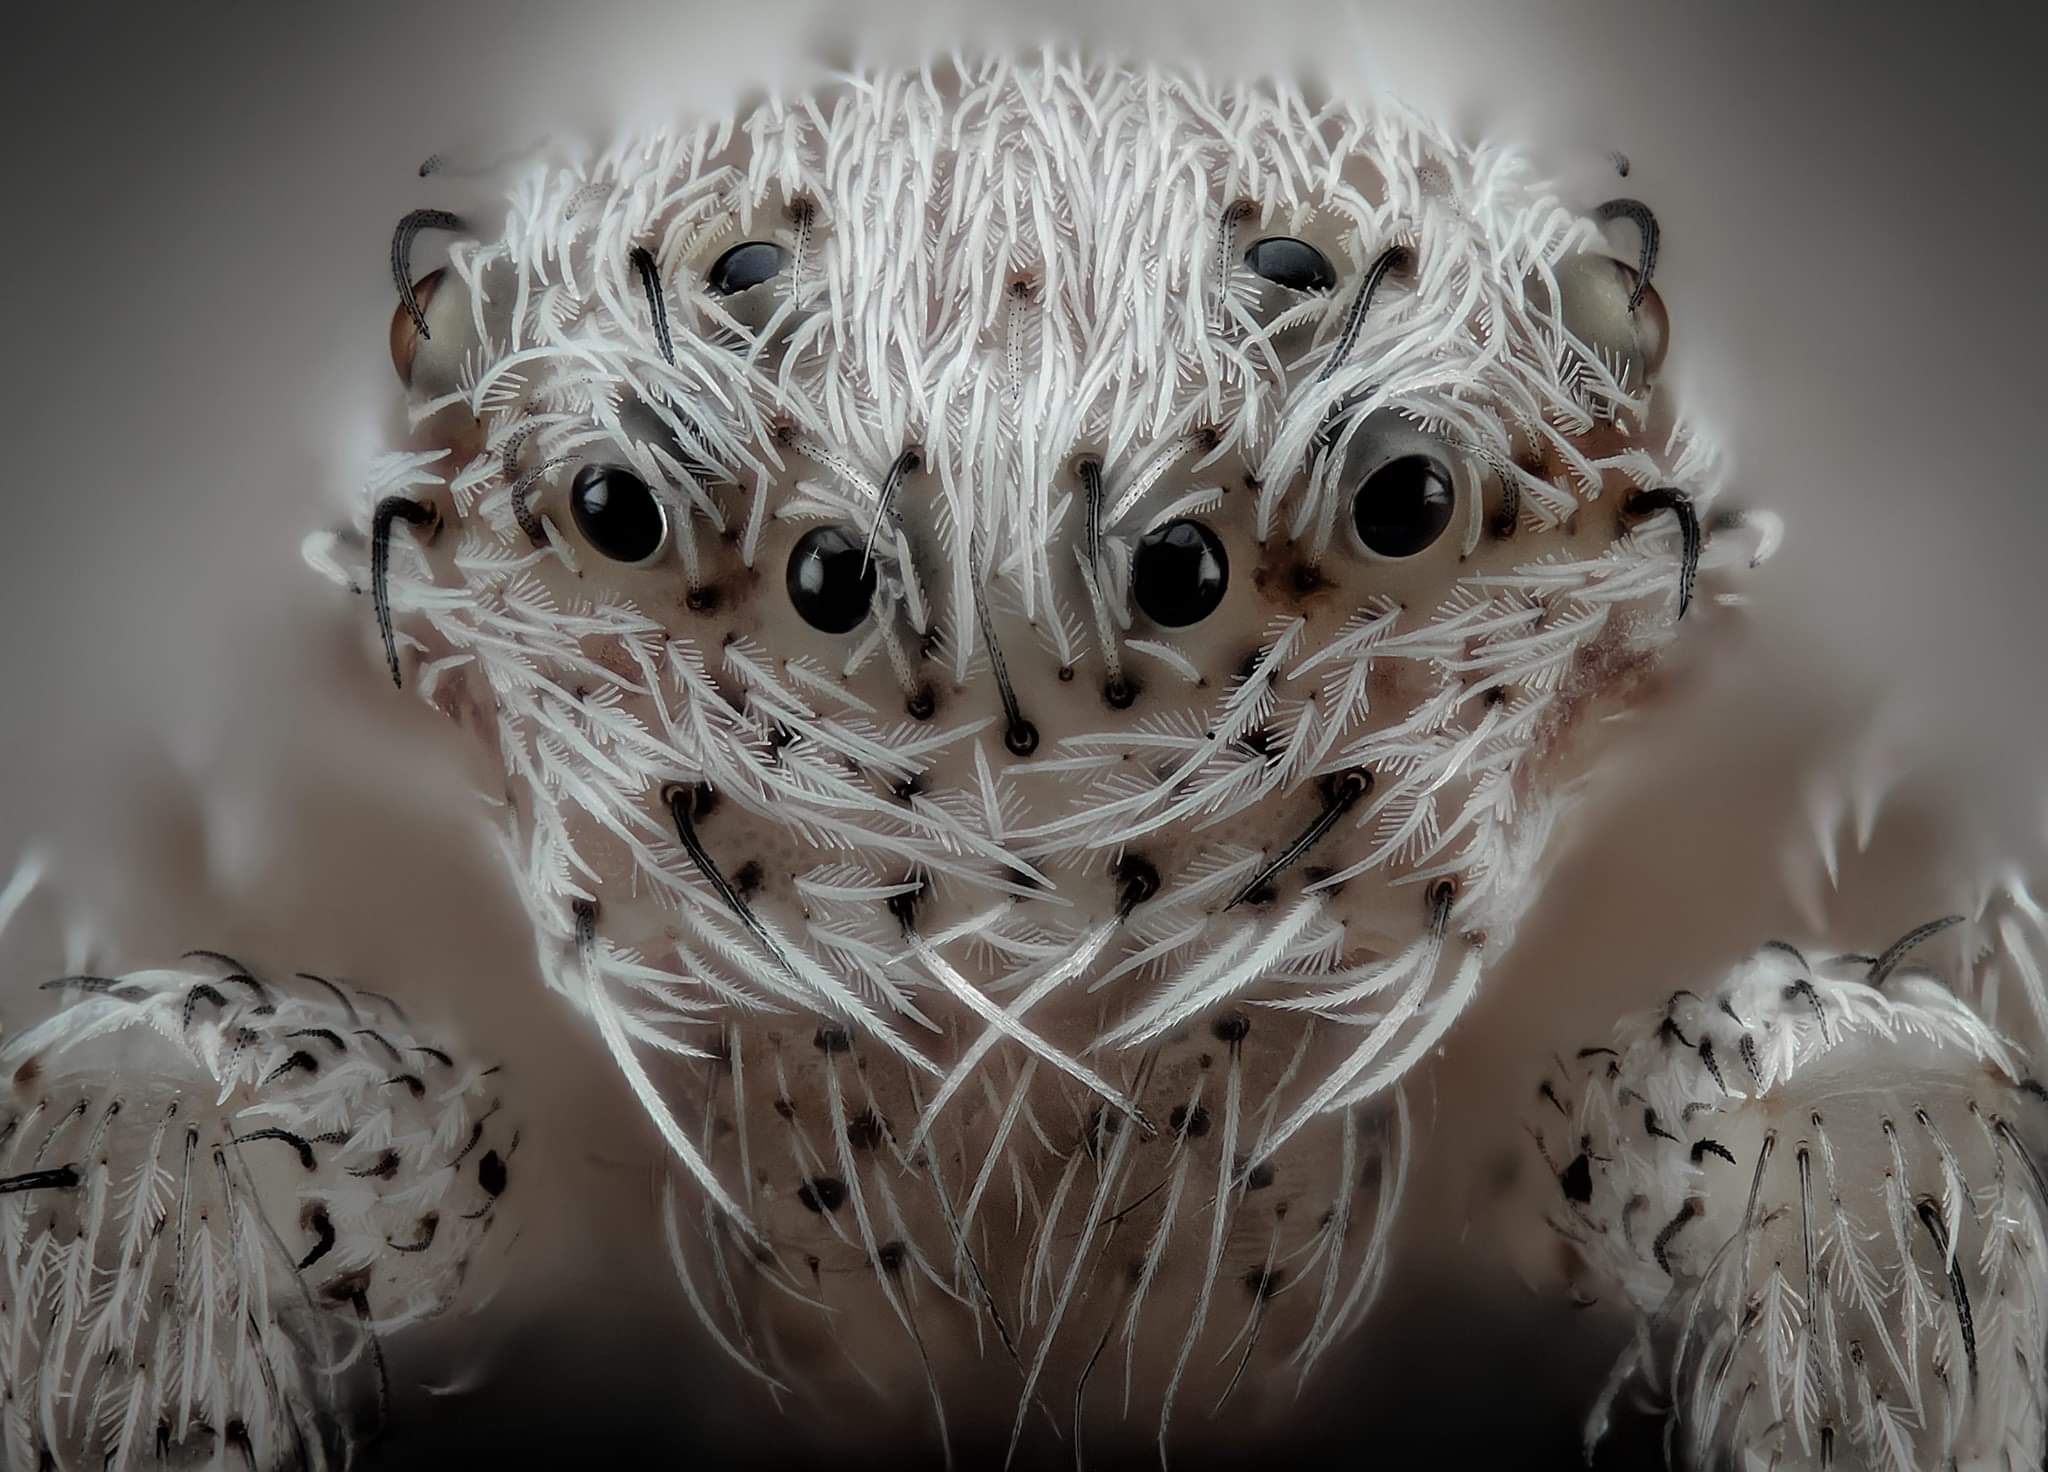 L'incroyable portrait d'une petite araignée blanche espagnole (probablement de la famille des Philodromidae selon le photographe). 6ème place du concours de microphotographie Nikon 2019  Javier Rupérez